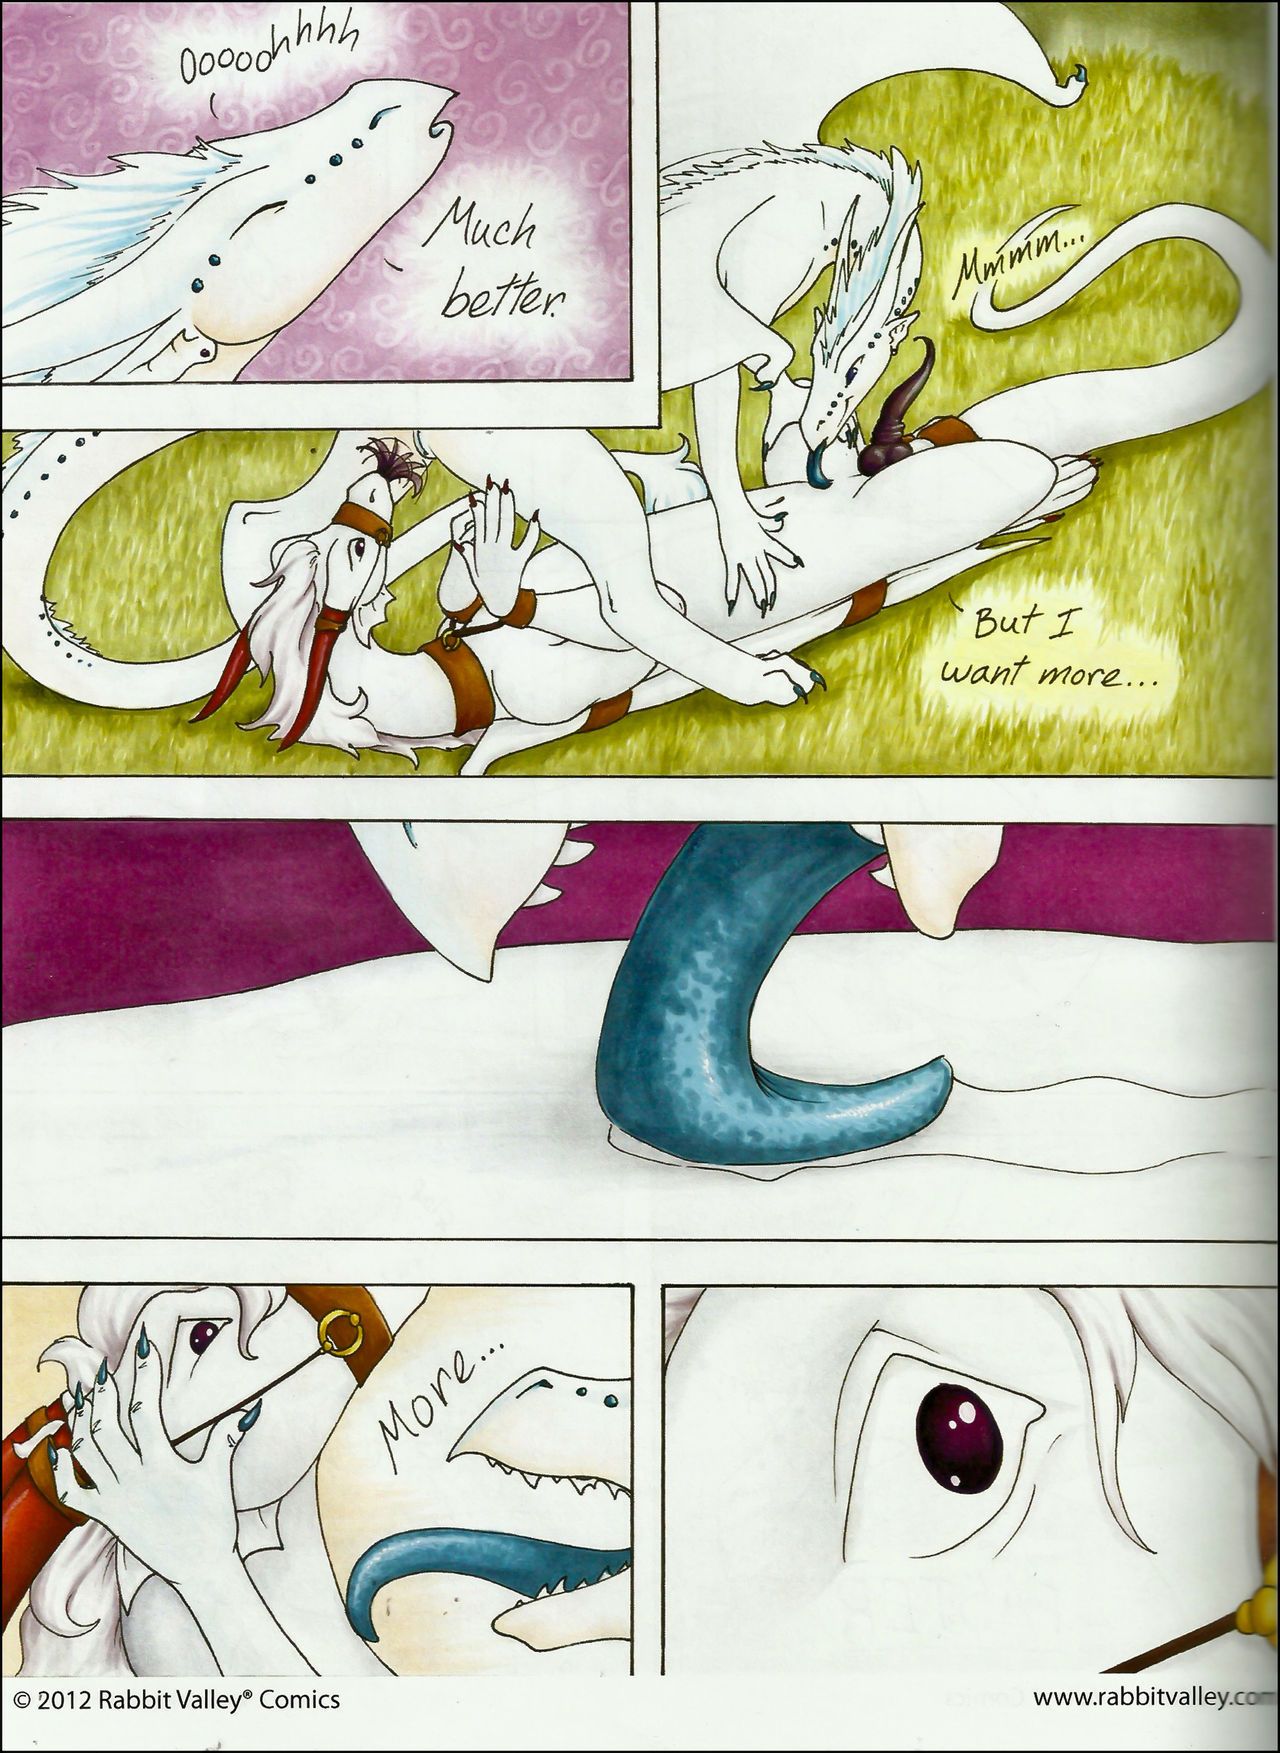 dragon\'s الكنز حجم 2 (composition من مختلفة artists)